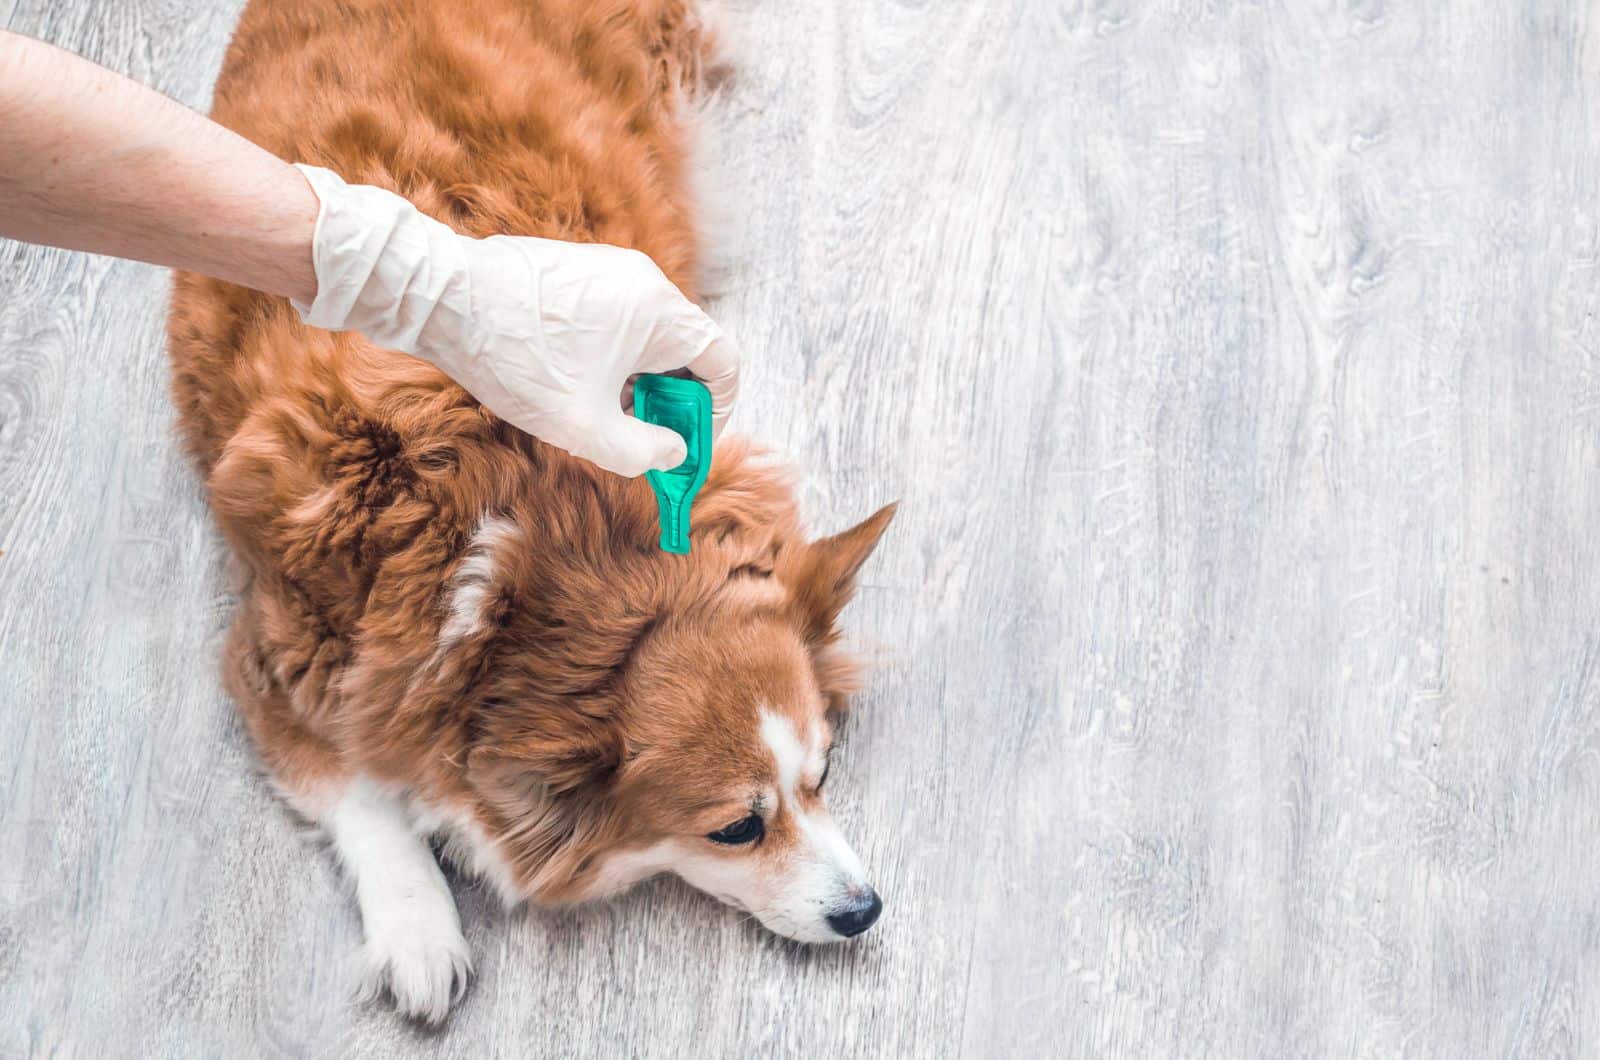 vet checking dog for Tick